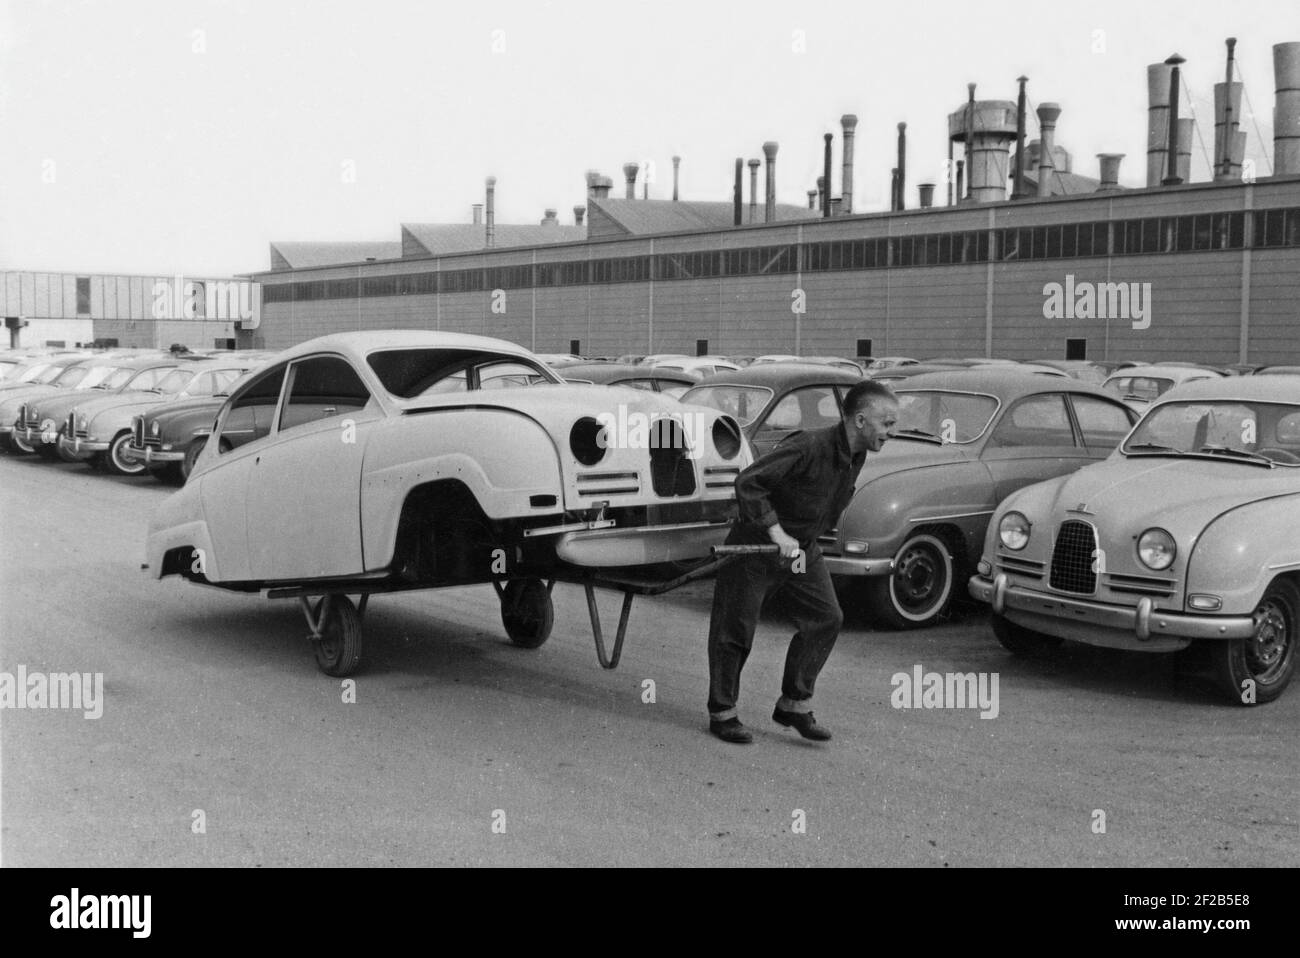 Produzione di automobili negli anni '50. La fabbrica di automobili Saab in Trollhättan Svezia con la sua linea di produzione. Una strana immagine di un lavoratore che trascina i chassi di un'automobile di Saab dietro di lui su una carrozza. Il modello è Saab 96, prodotto tra il 1960 e il 1963. Svezia 1961 Foto Stock